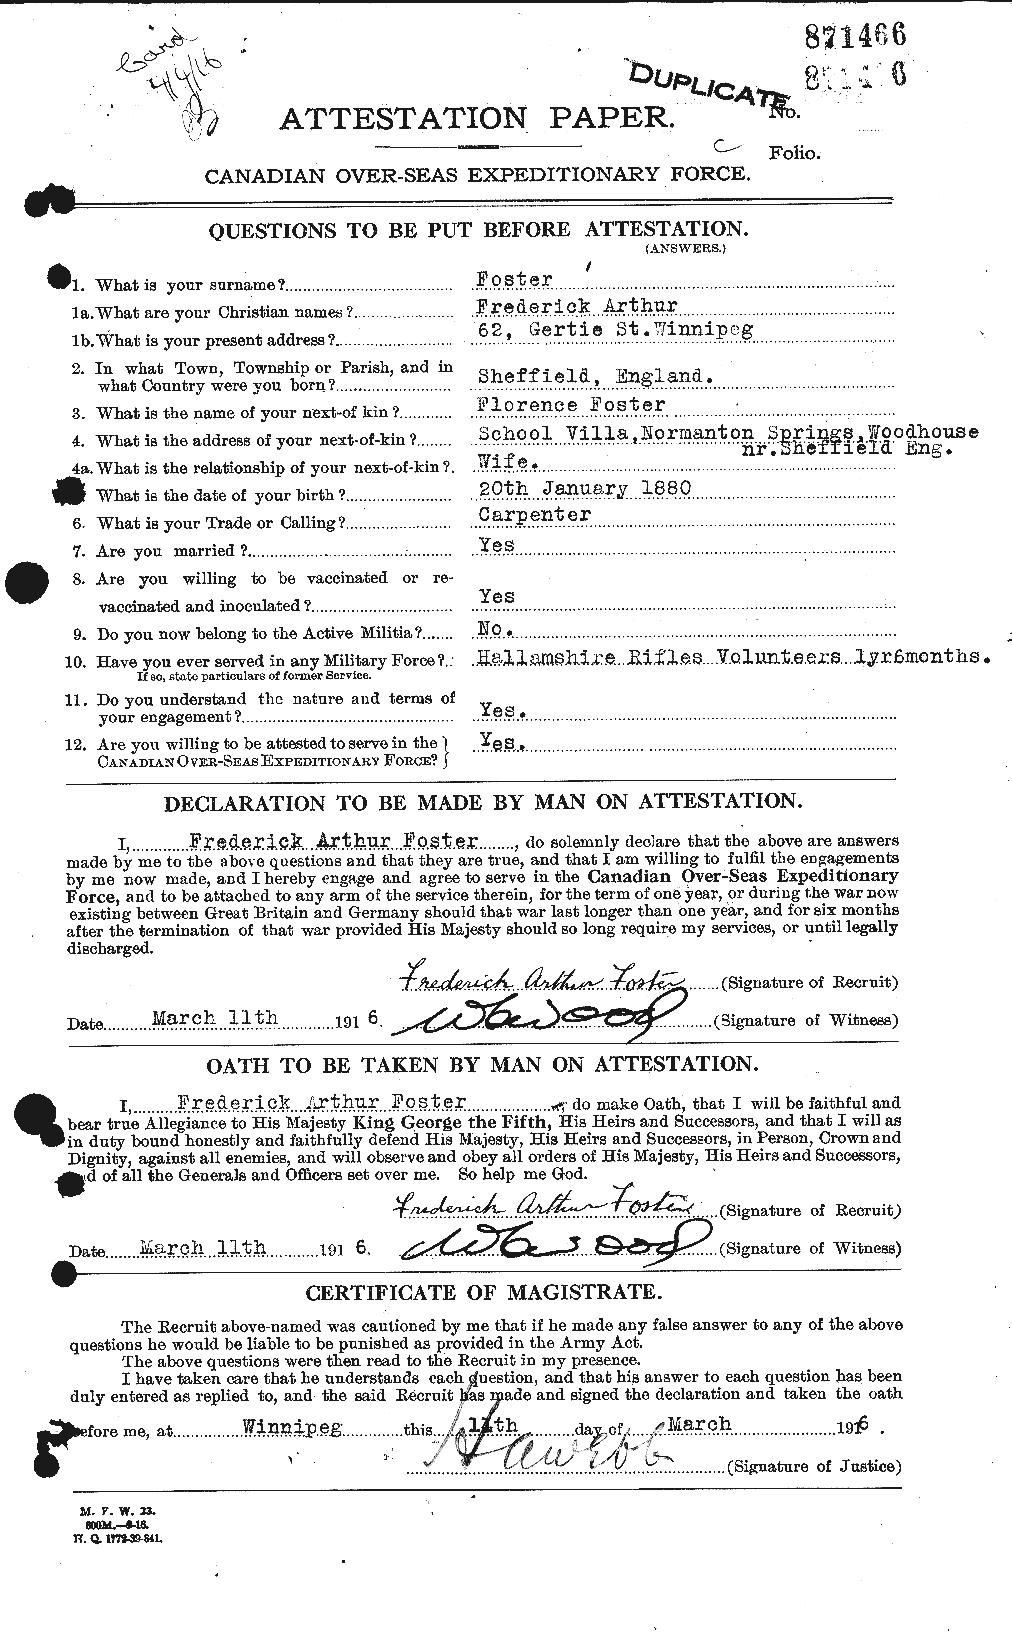 Dossiers du Personnel de la Première Guerre mondiale - CEC 330647a